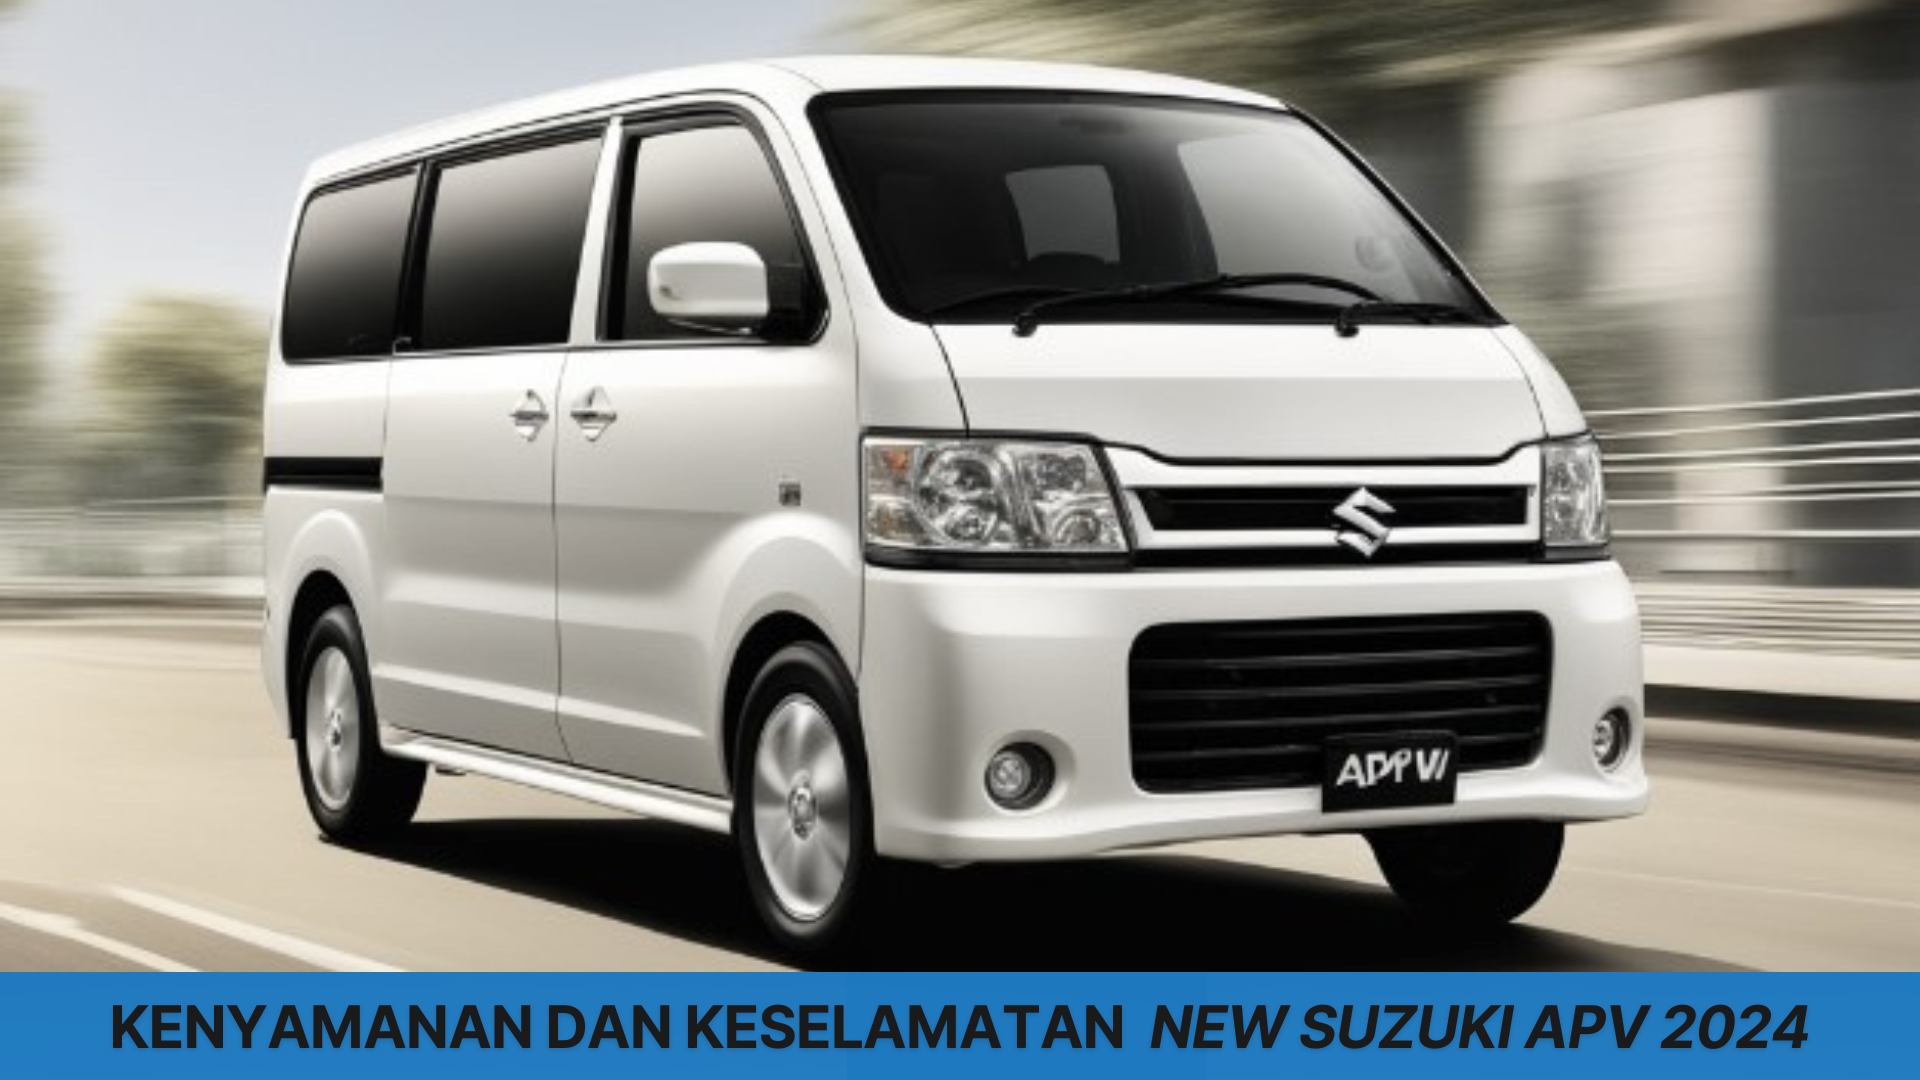 New Suzuki APV 2024 Punya Kenyamanan Terbaik dengan Beragam Fitur, Keluarga Jadi Bahagia